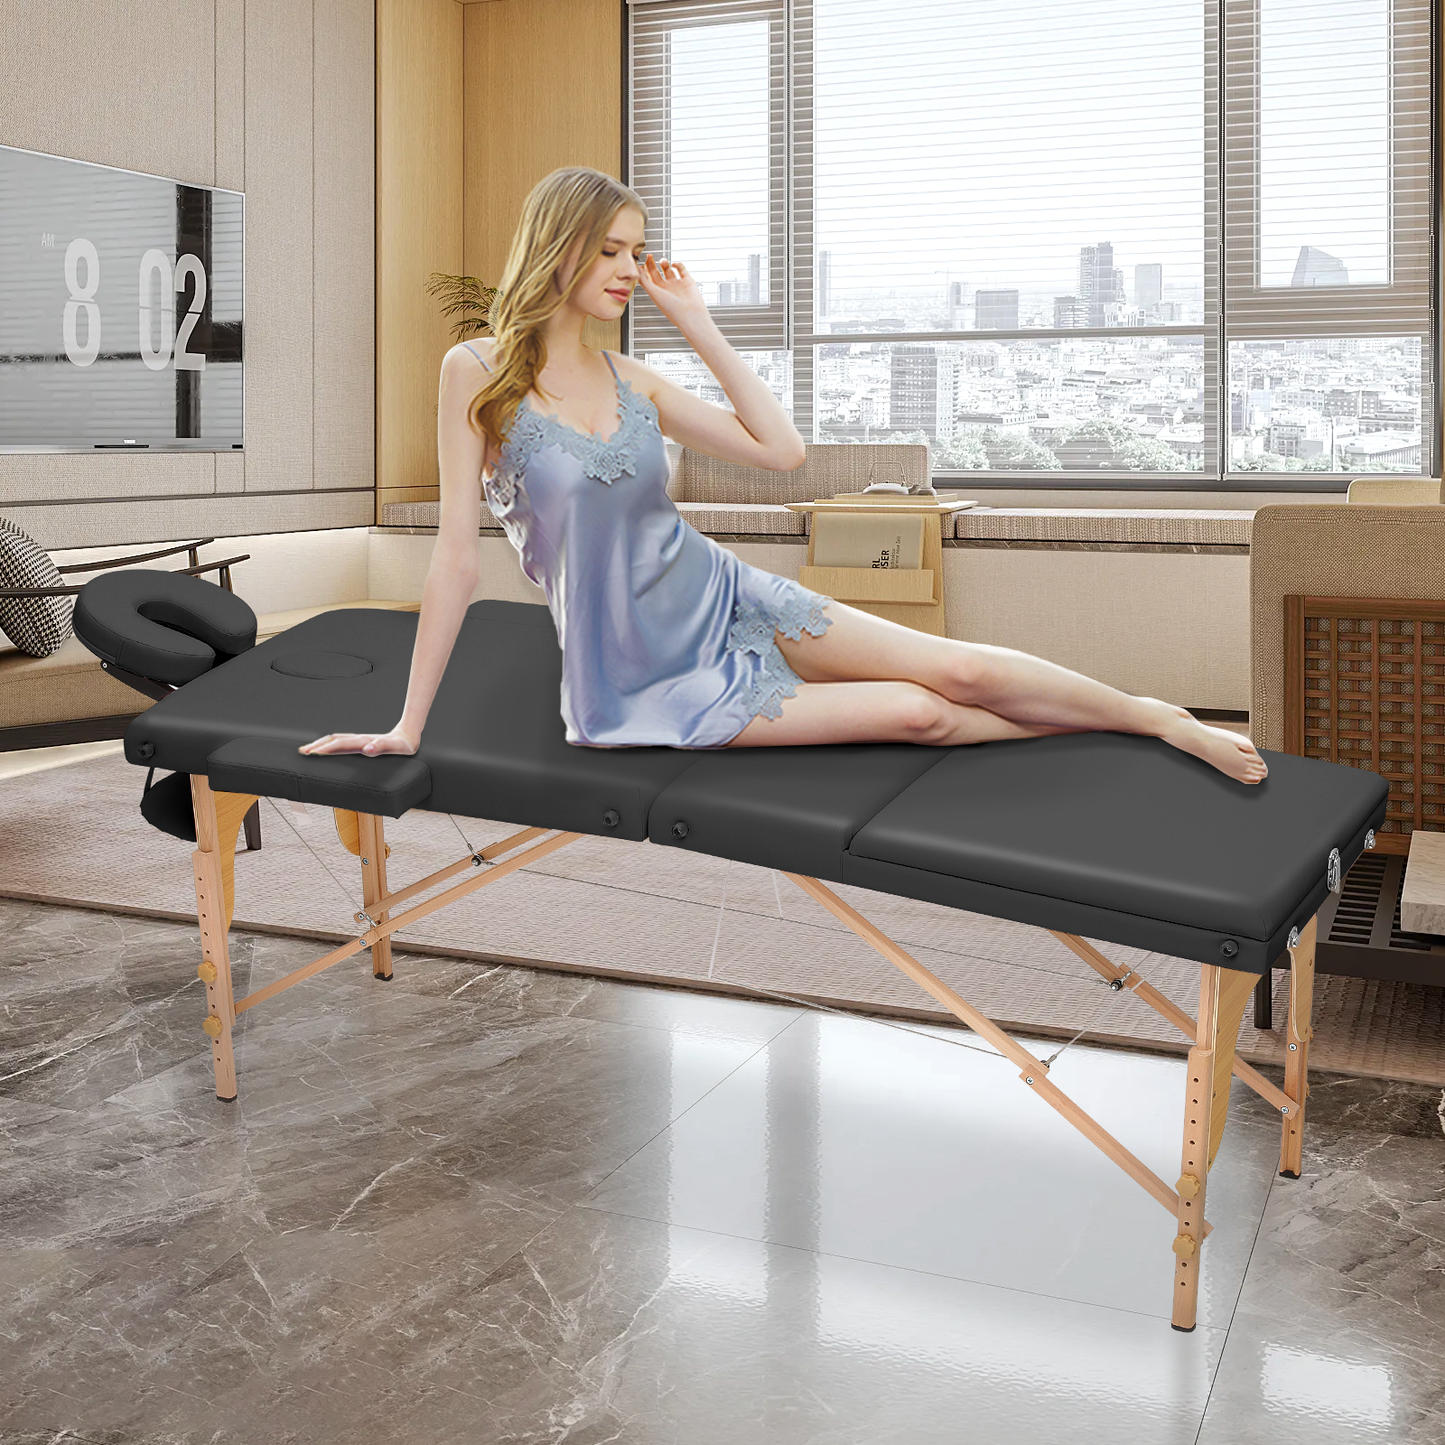 Portable Massage Table - Adjustable Height 24.5" to 33.5" - Tilt Back - Wooden Frame